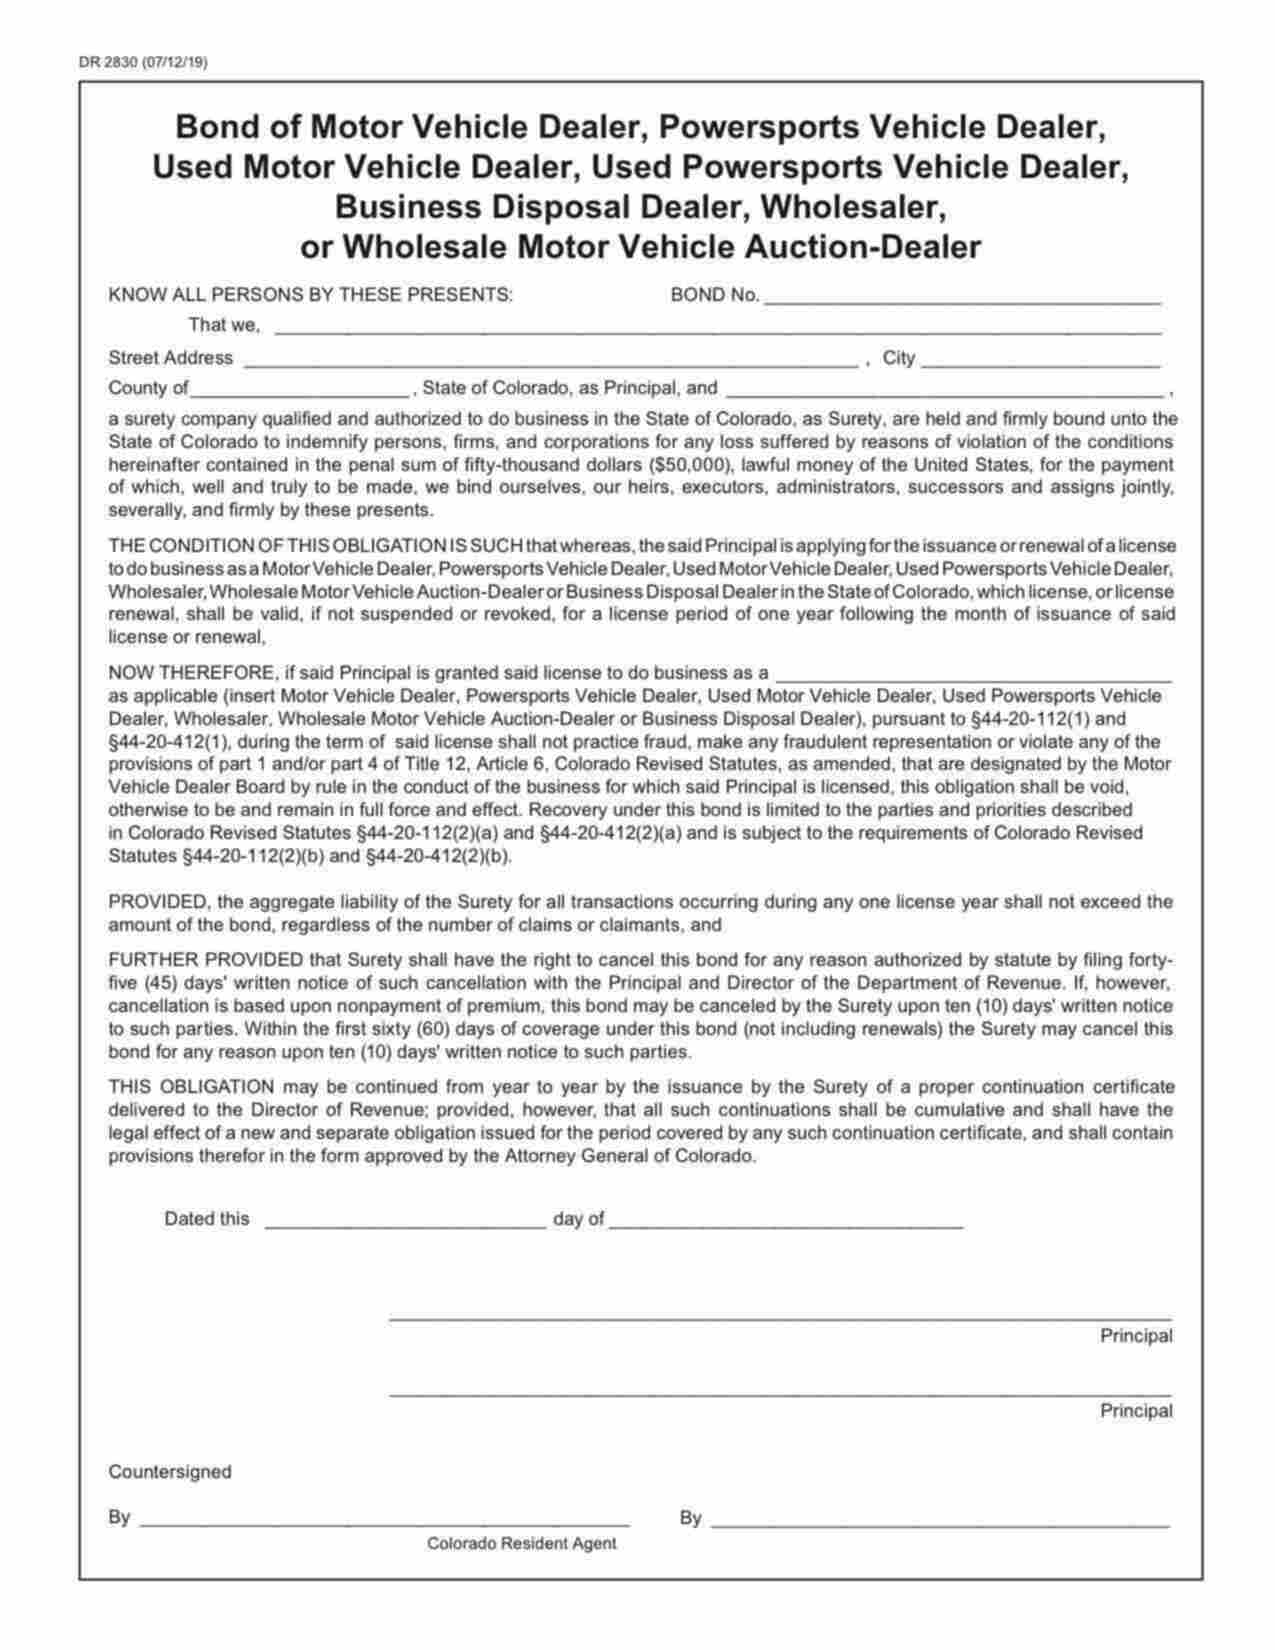 Colorado Wholesaler Bond Form